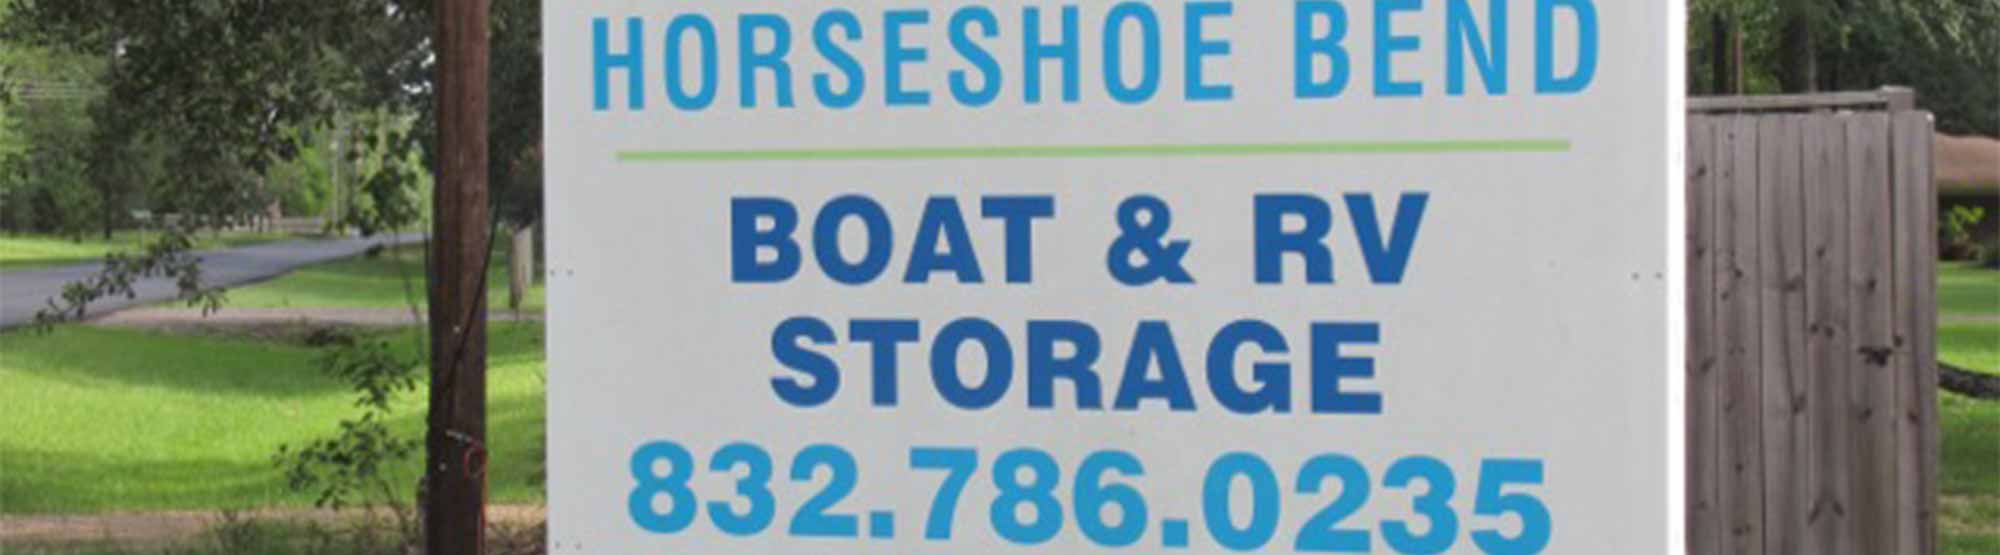 Horseshoe Bend Storage Signage